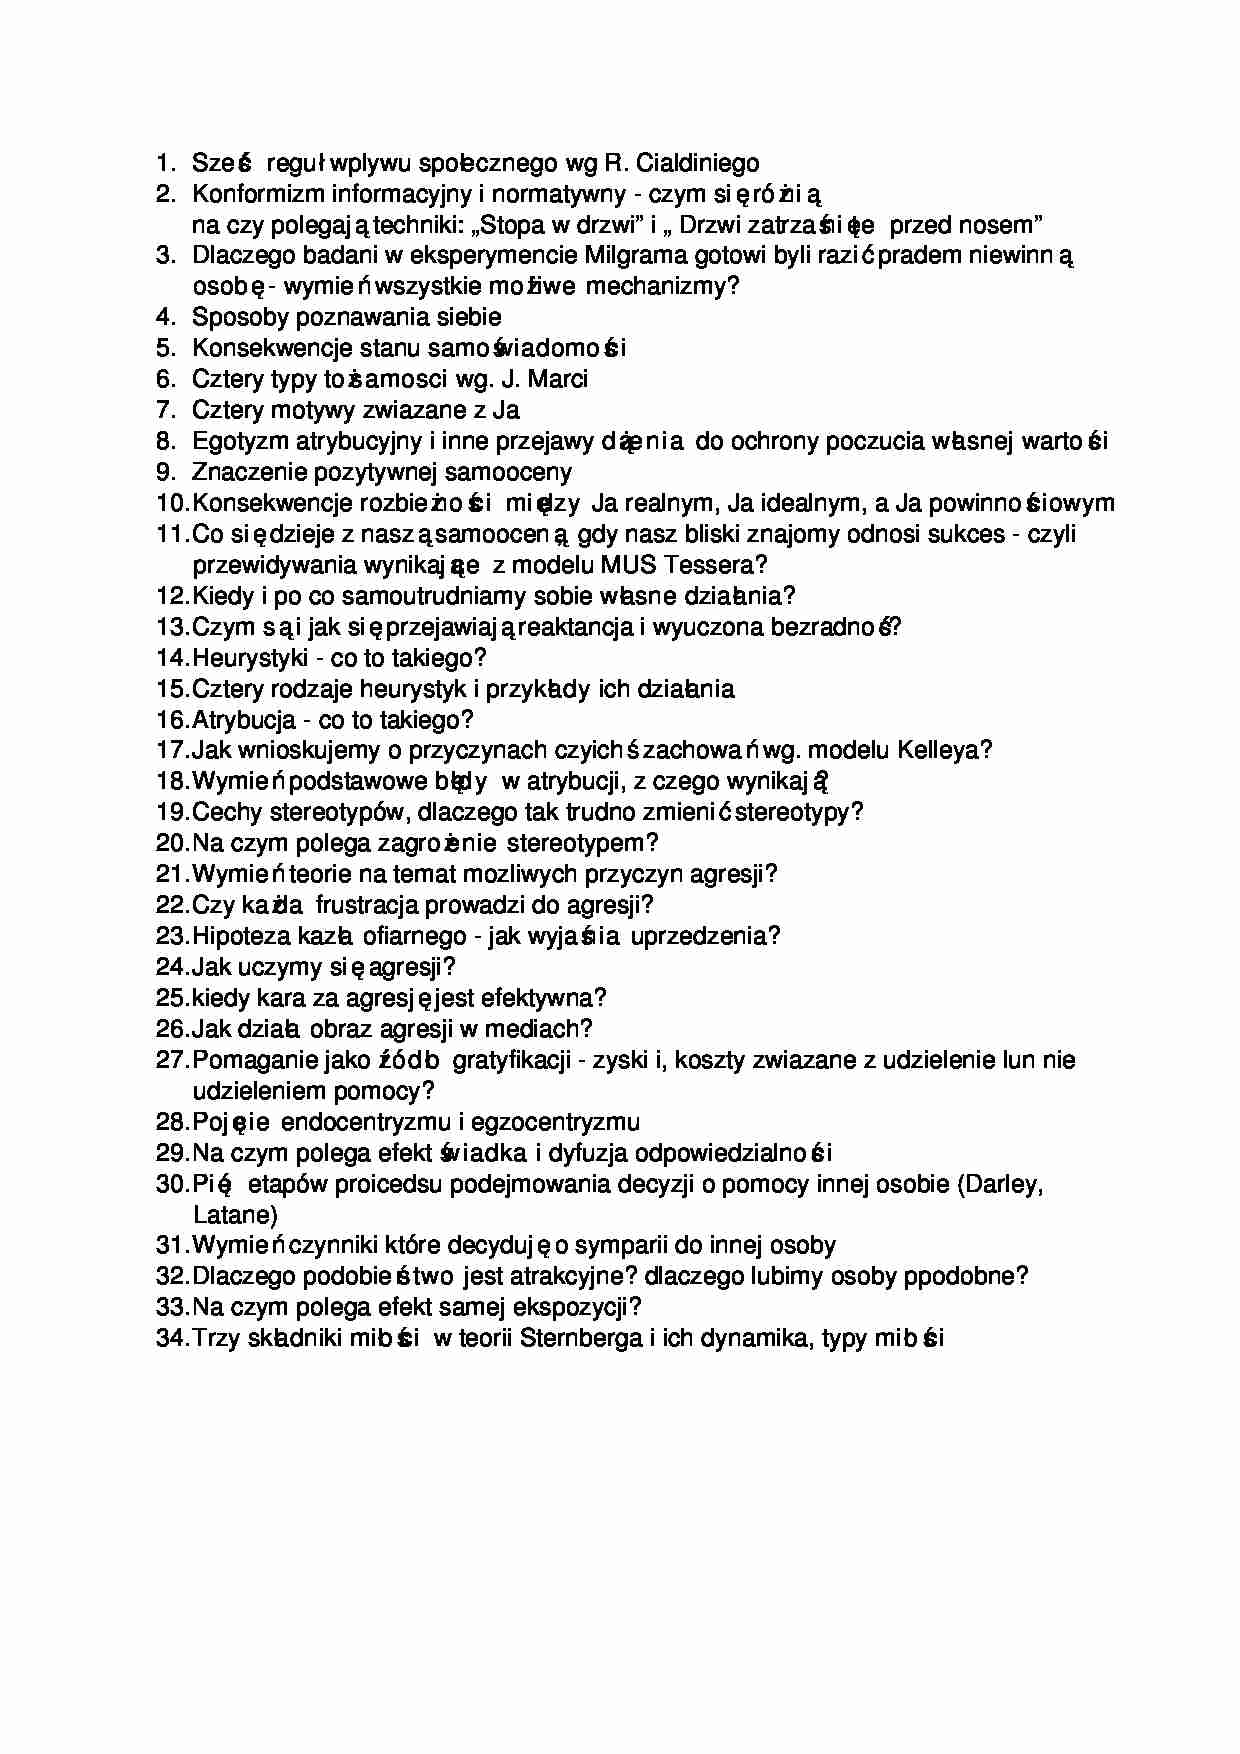 Podstawy psychologii - pytania egzaminacyjne - strona 1